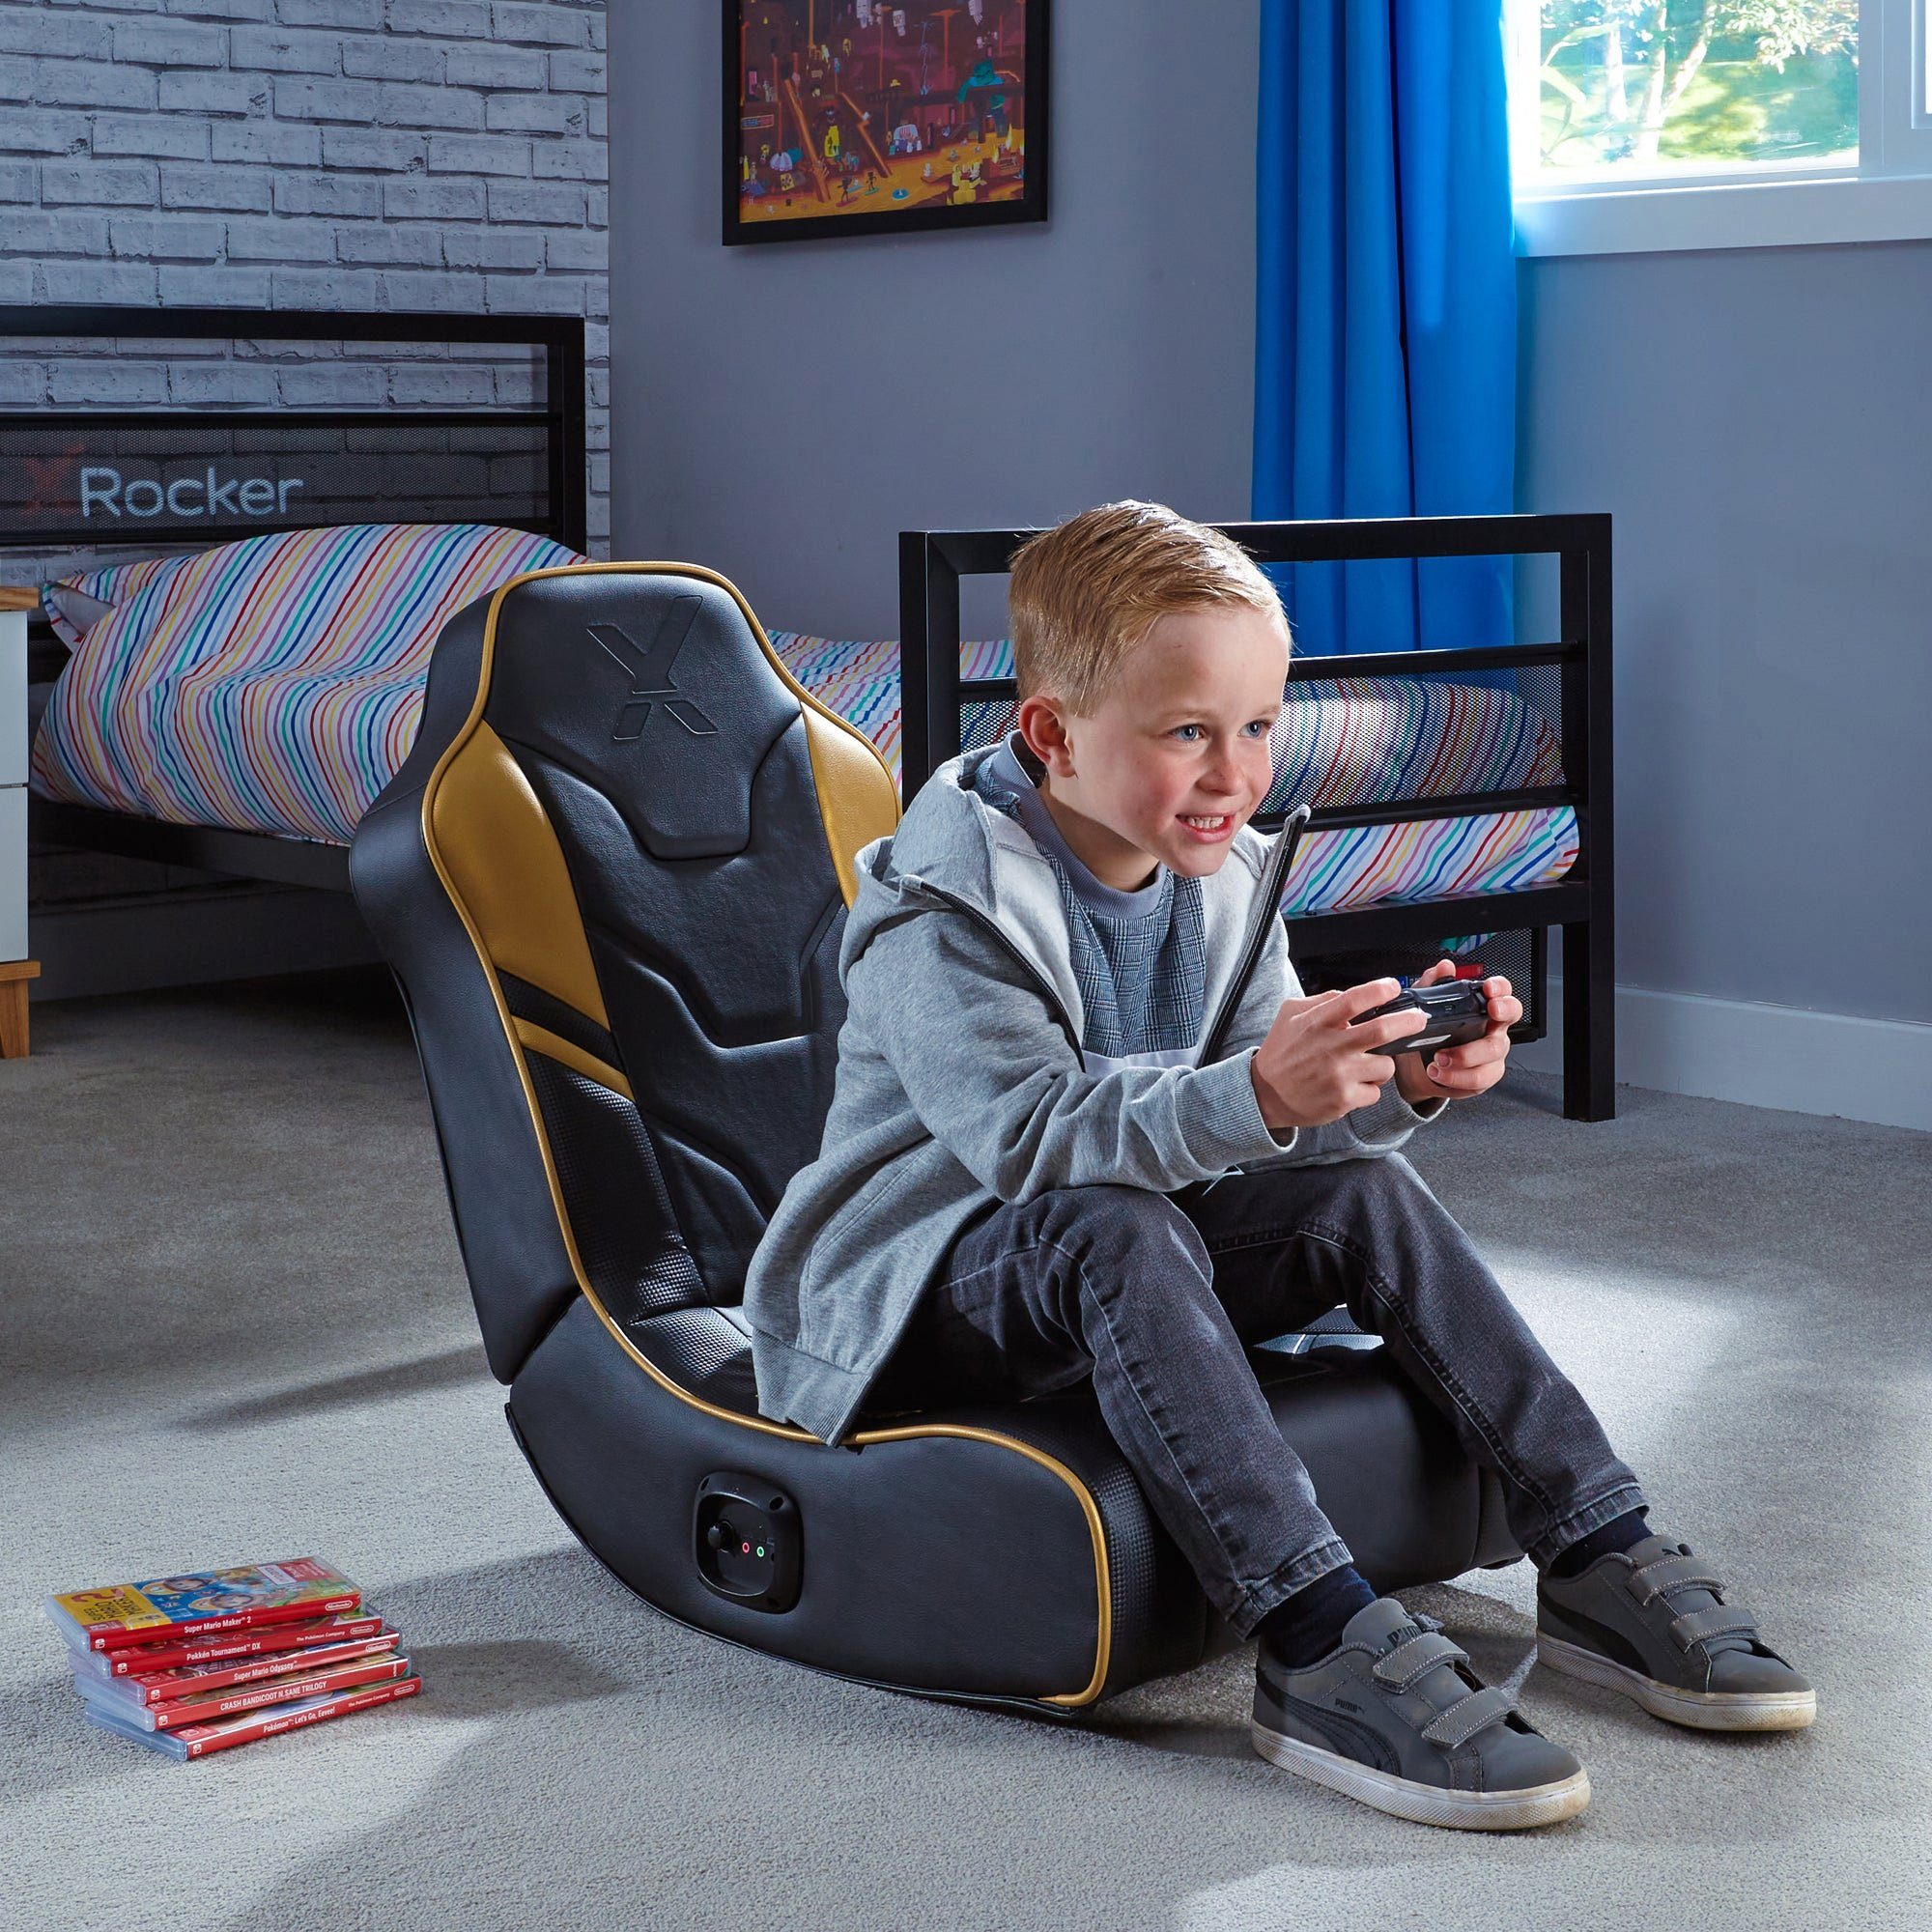 Rocker Kindersessel für Kinder, 2.0 Sessel Gold Audiosystem, für Teenager Gaming Floor mit Rocker 2.0 X Shadow Jugendliche, für